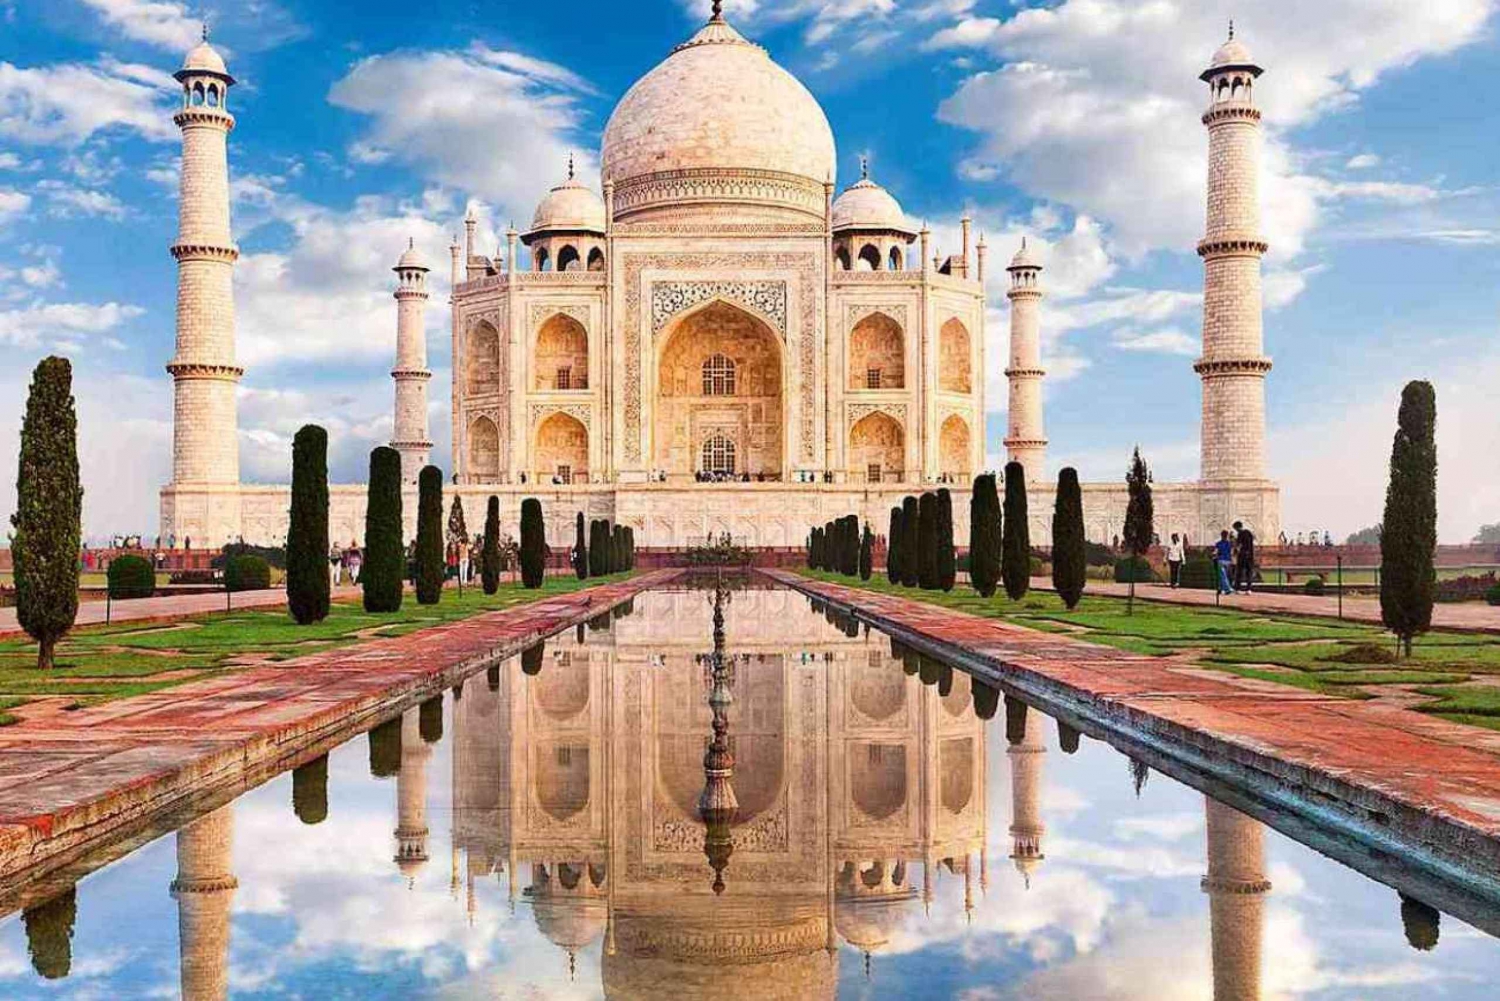 Utforska Agra från Jaipur och stanna till i New Delhi